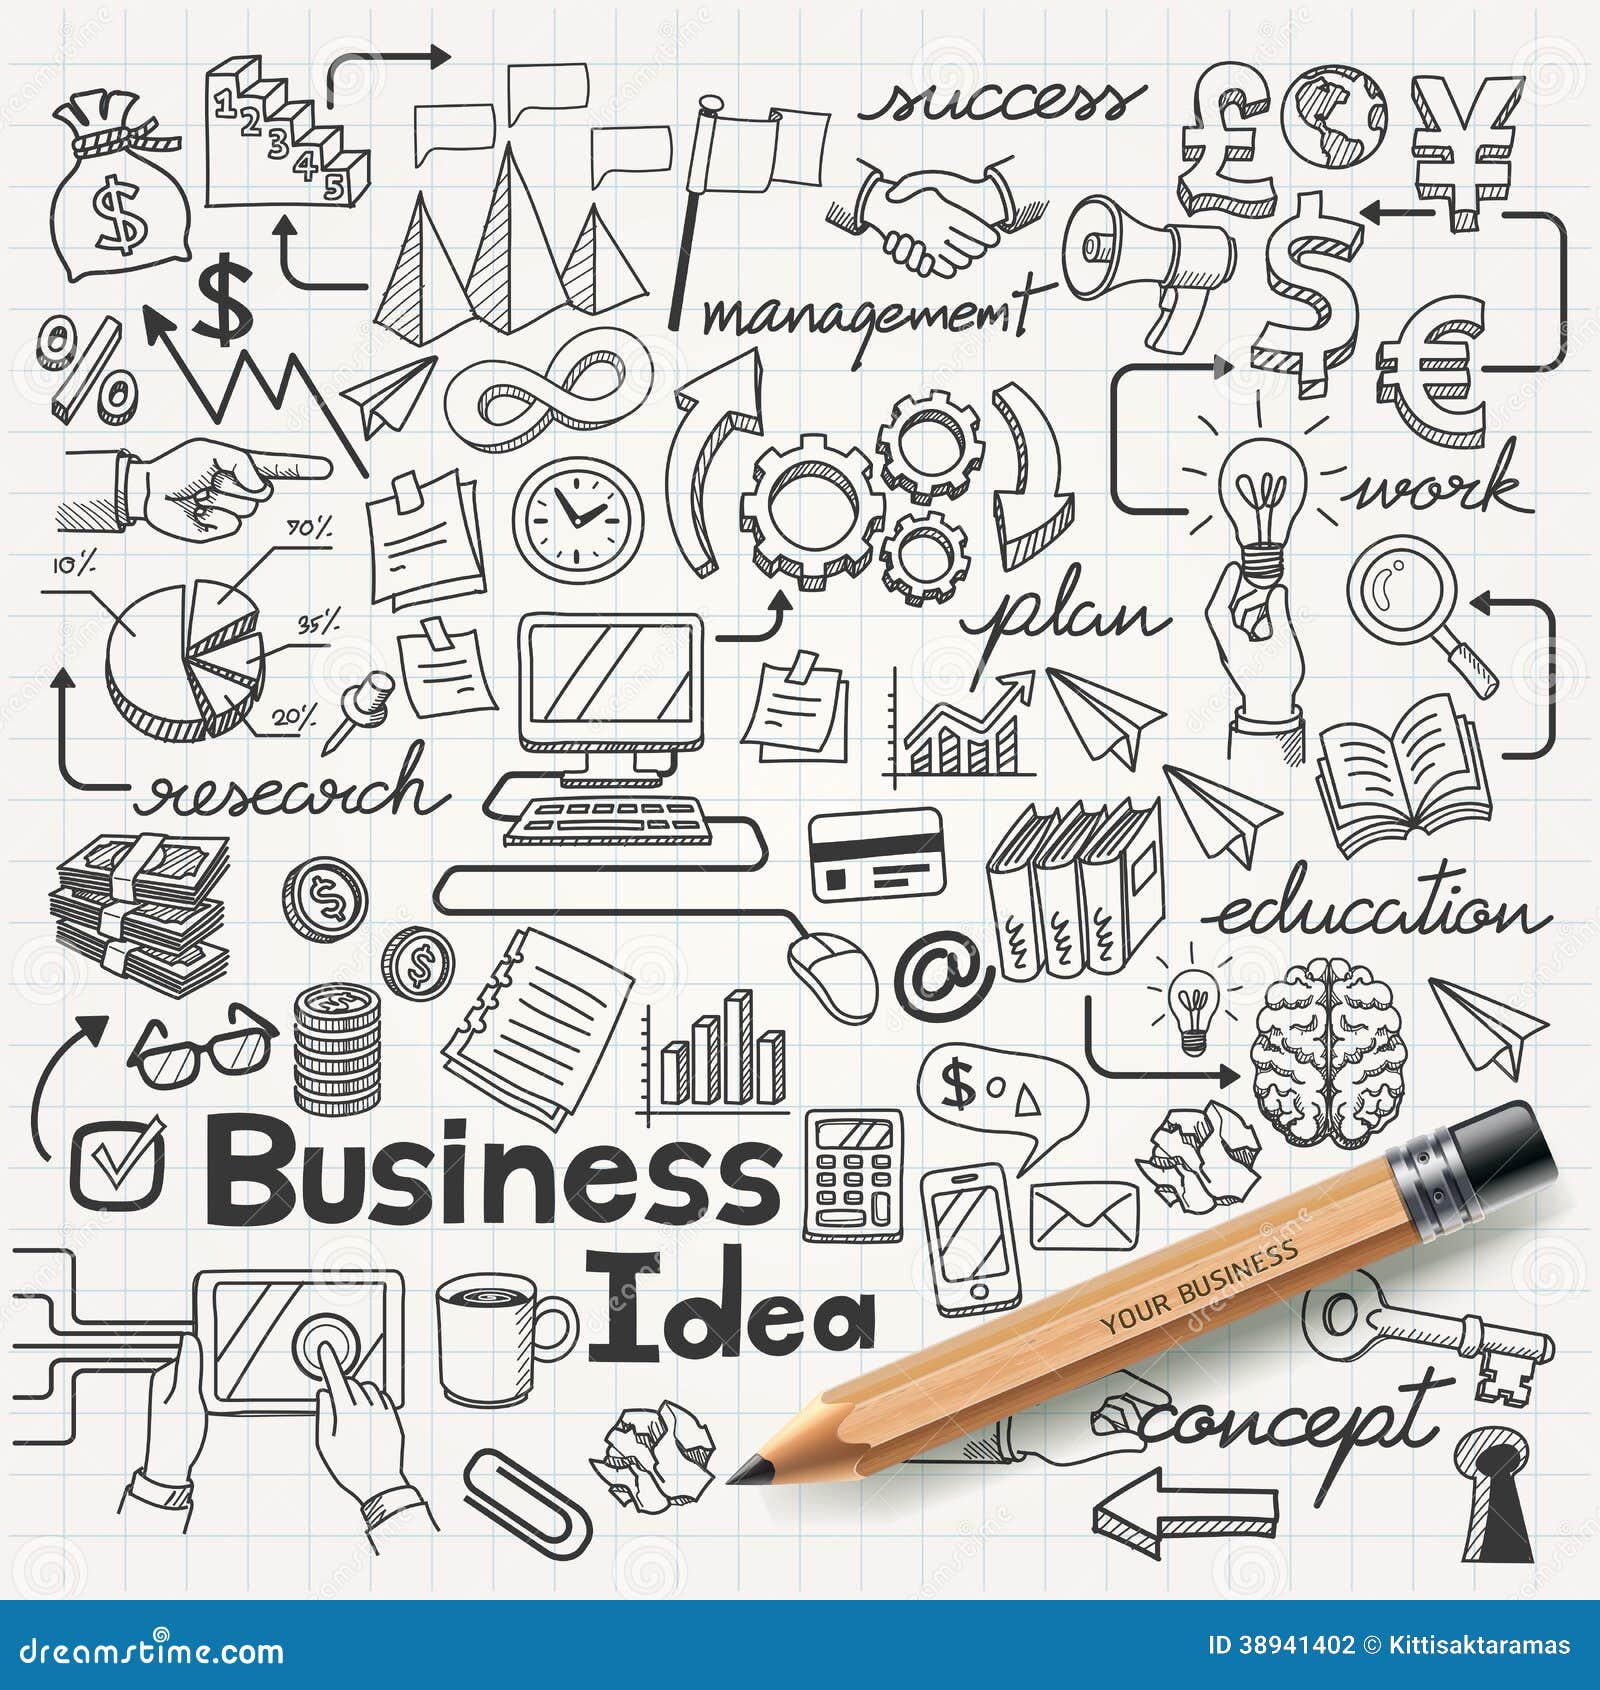 business idea doodles icons set.